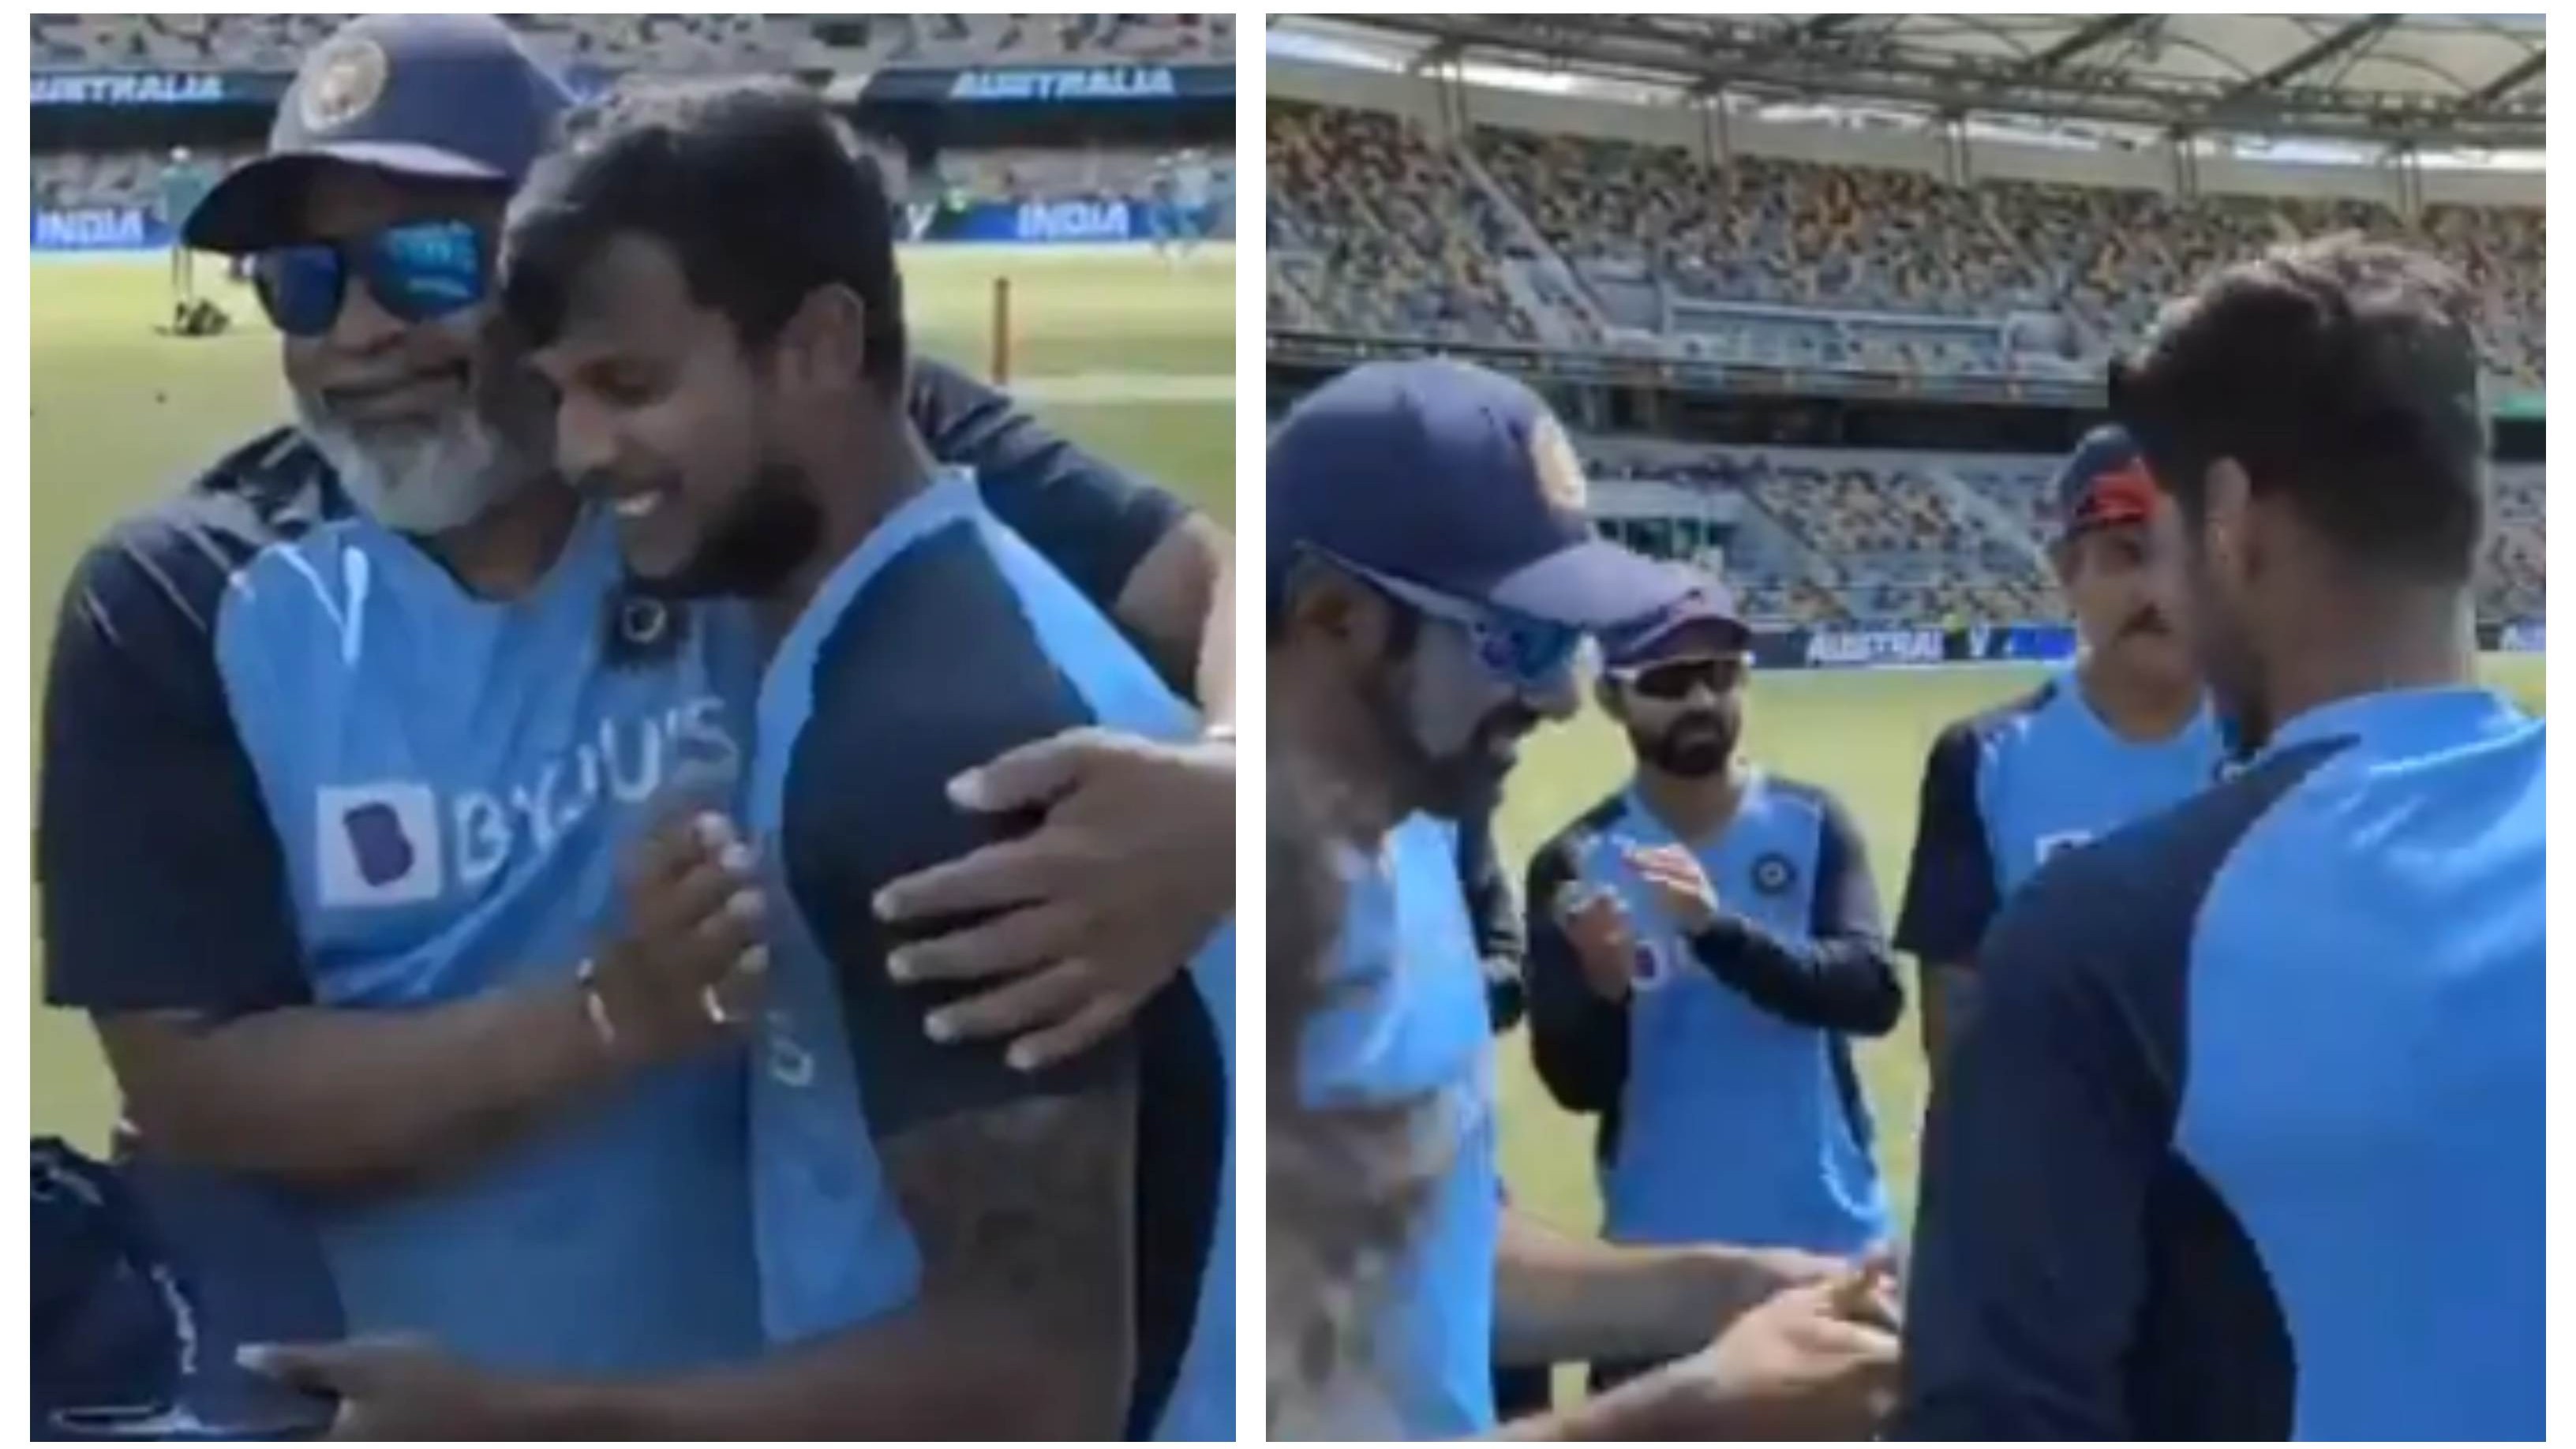 AUS v IND 2020-21: Indian cricket fraternity reacts as T Natarajan, Washington Sundar make Test debuts in Brisbane